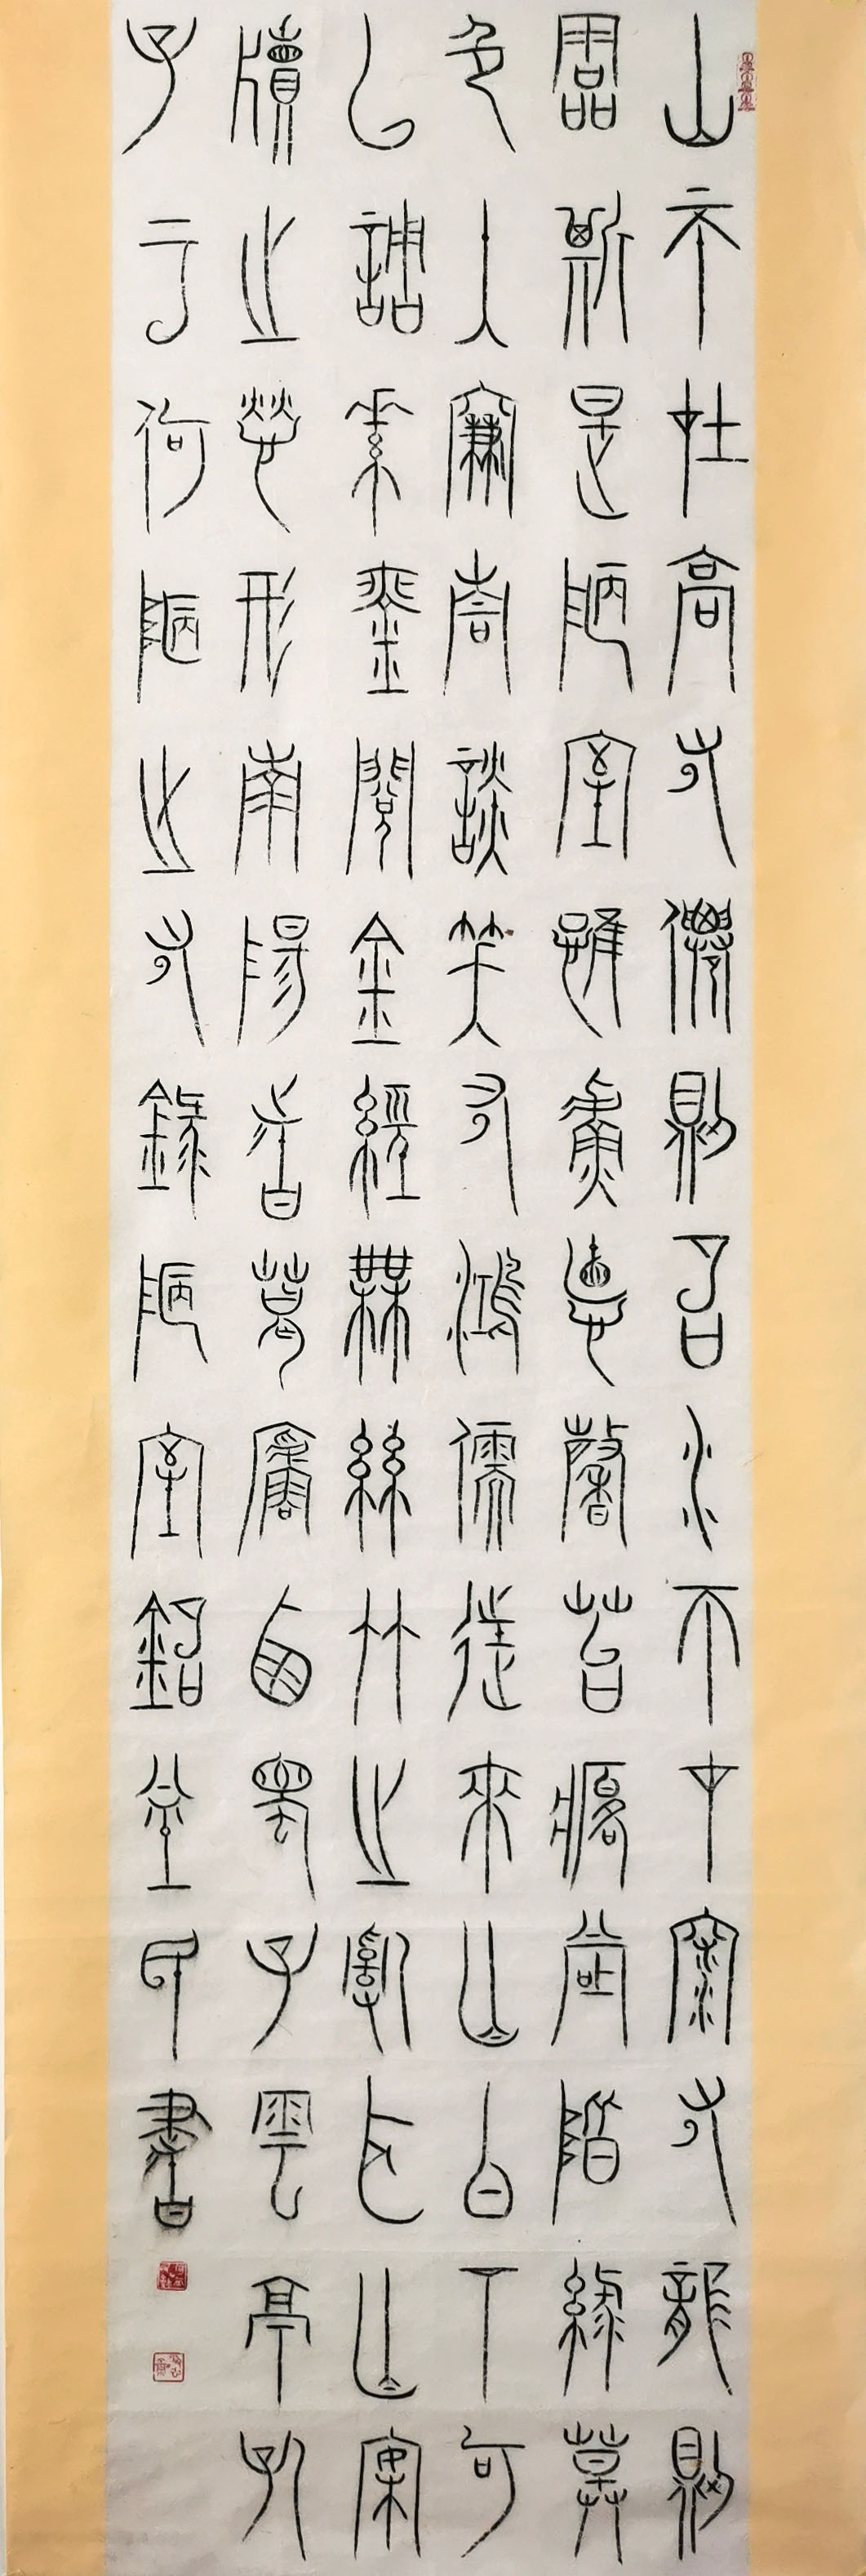 《飞龙在天 浓情端午》海内外华人艺术家共庆佳节书画展(图469)